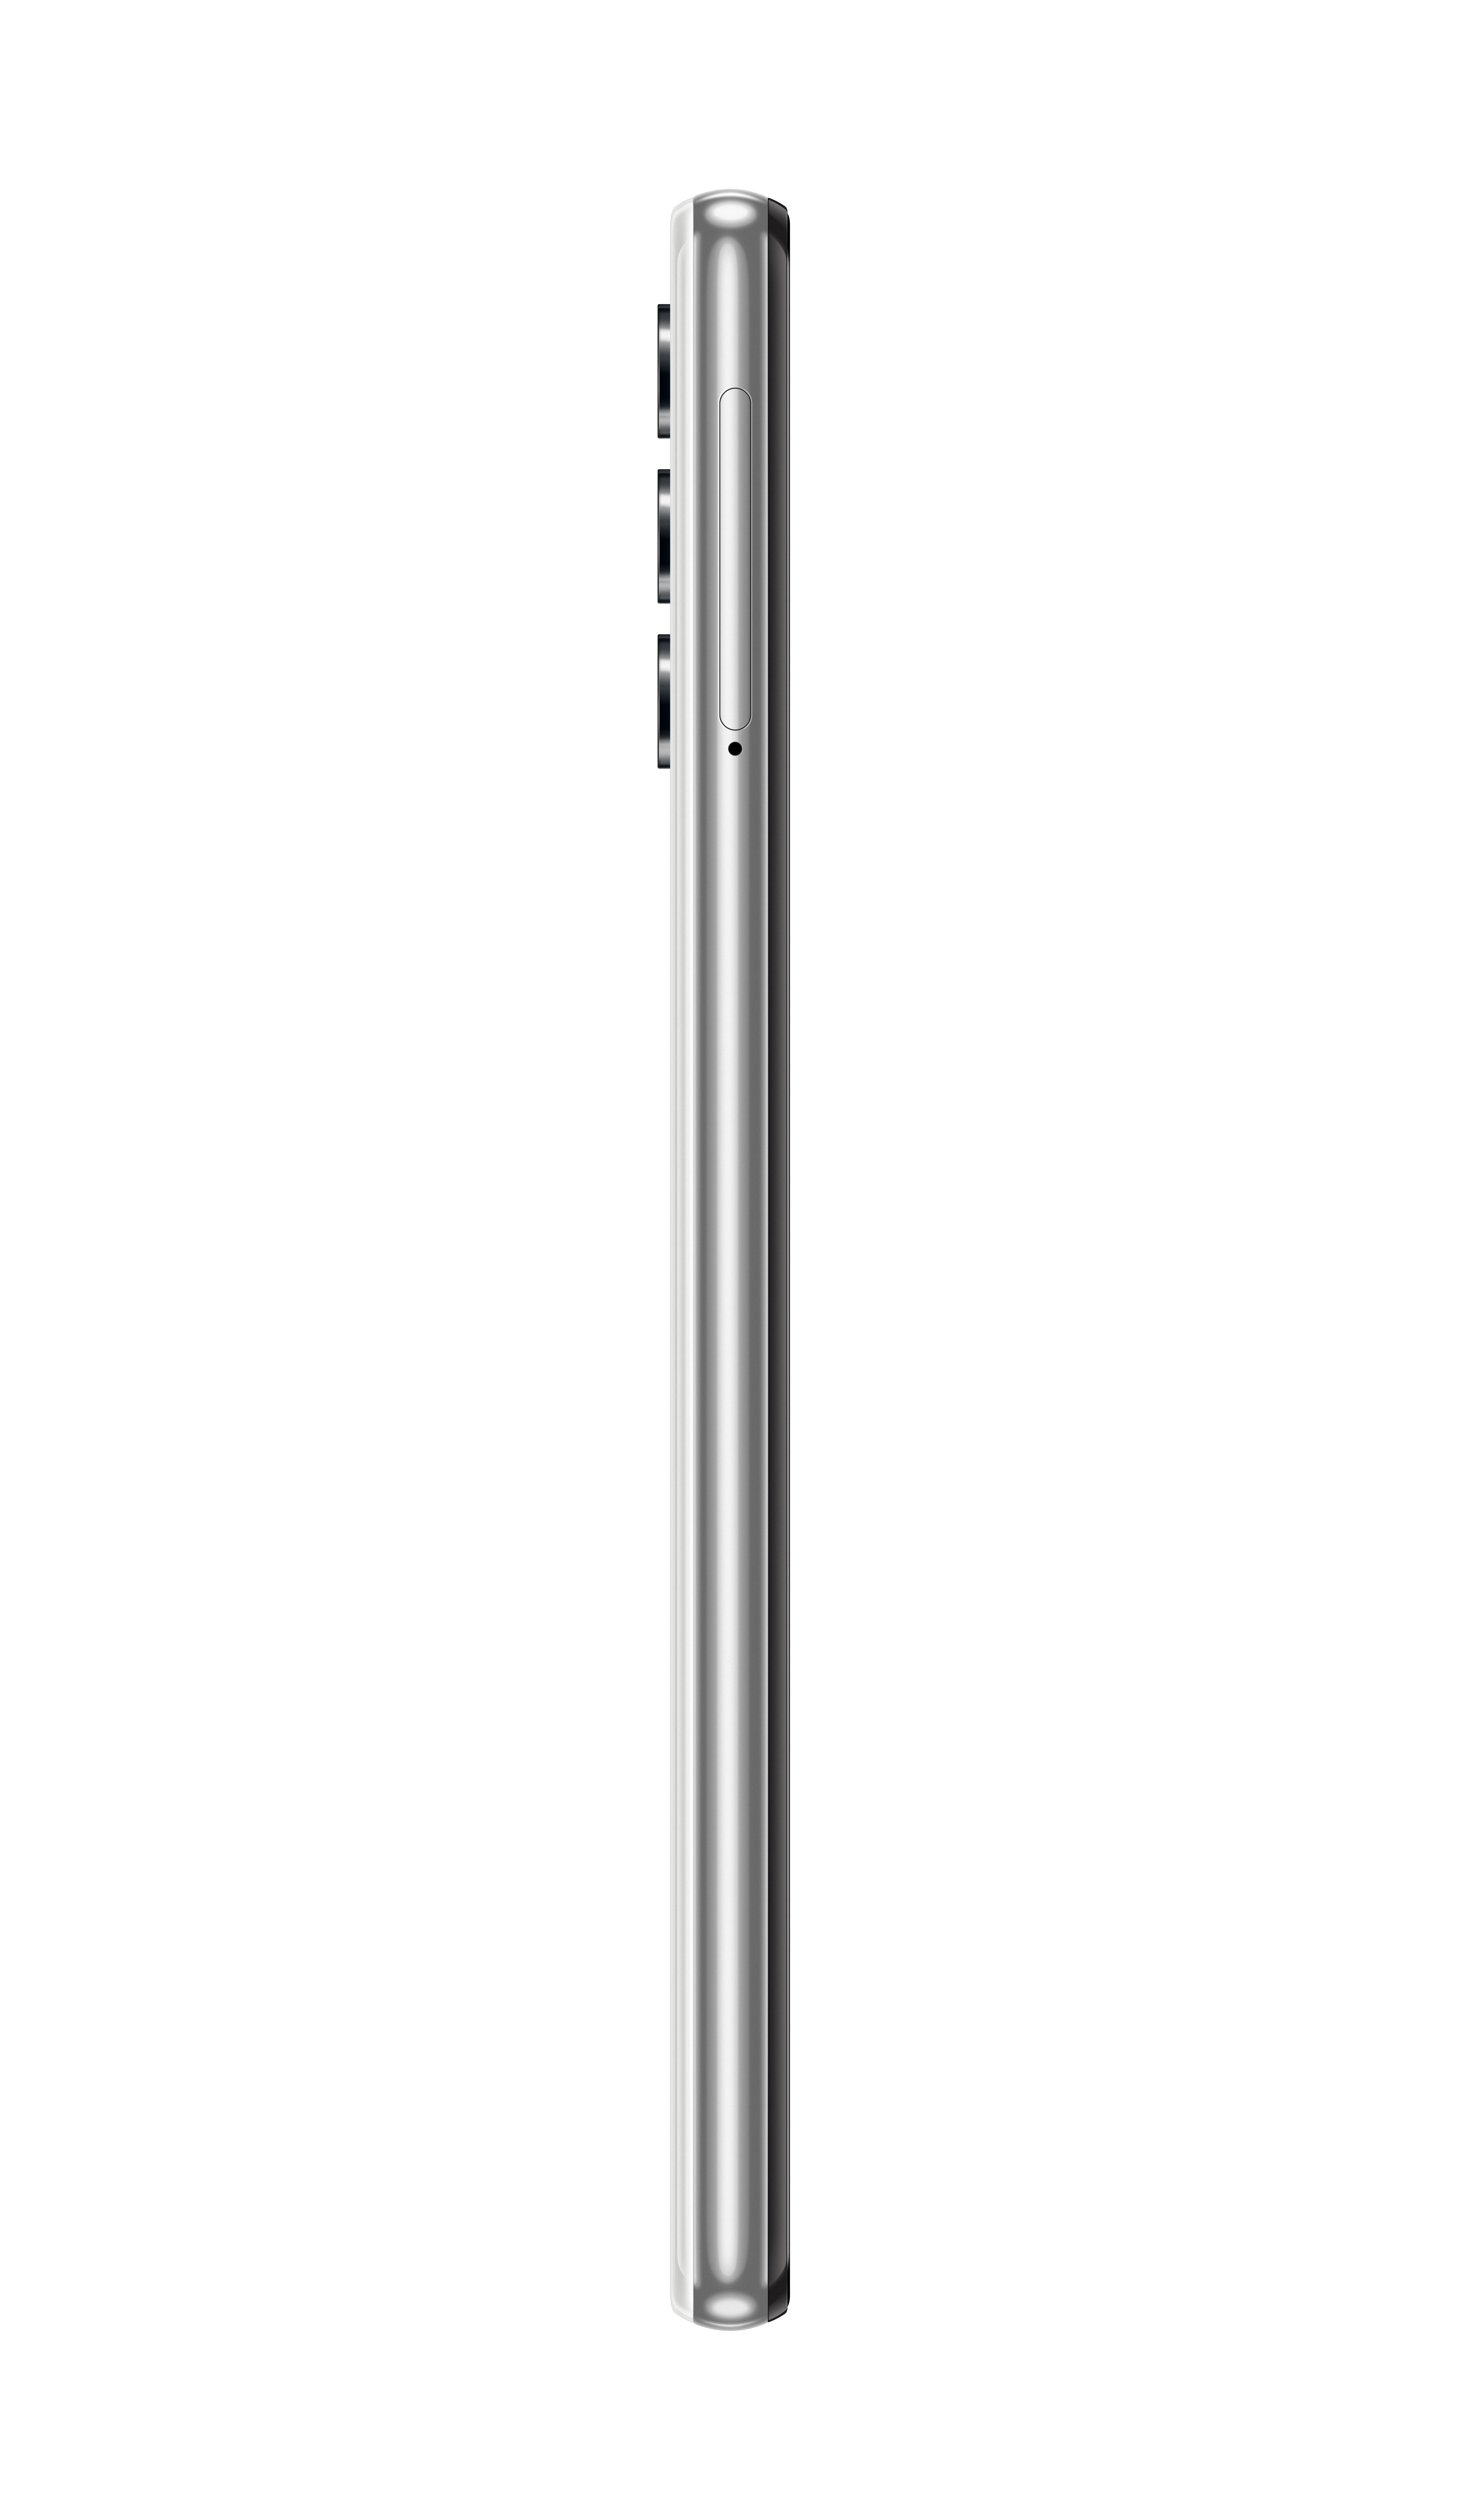 SAMSUNG Galaxy SIM A32 64 5G GB Dual Weiss